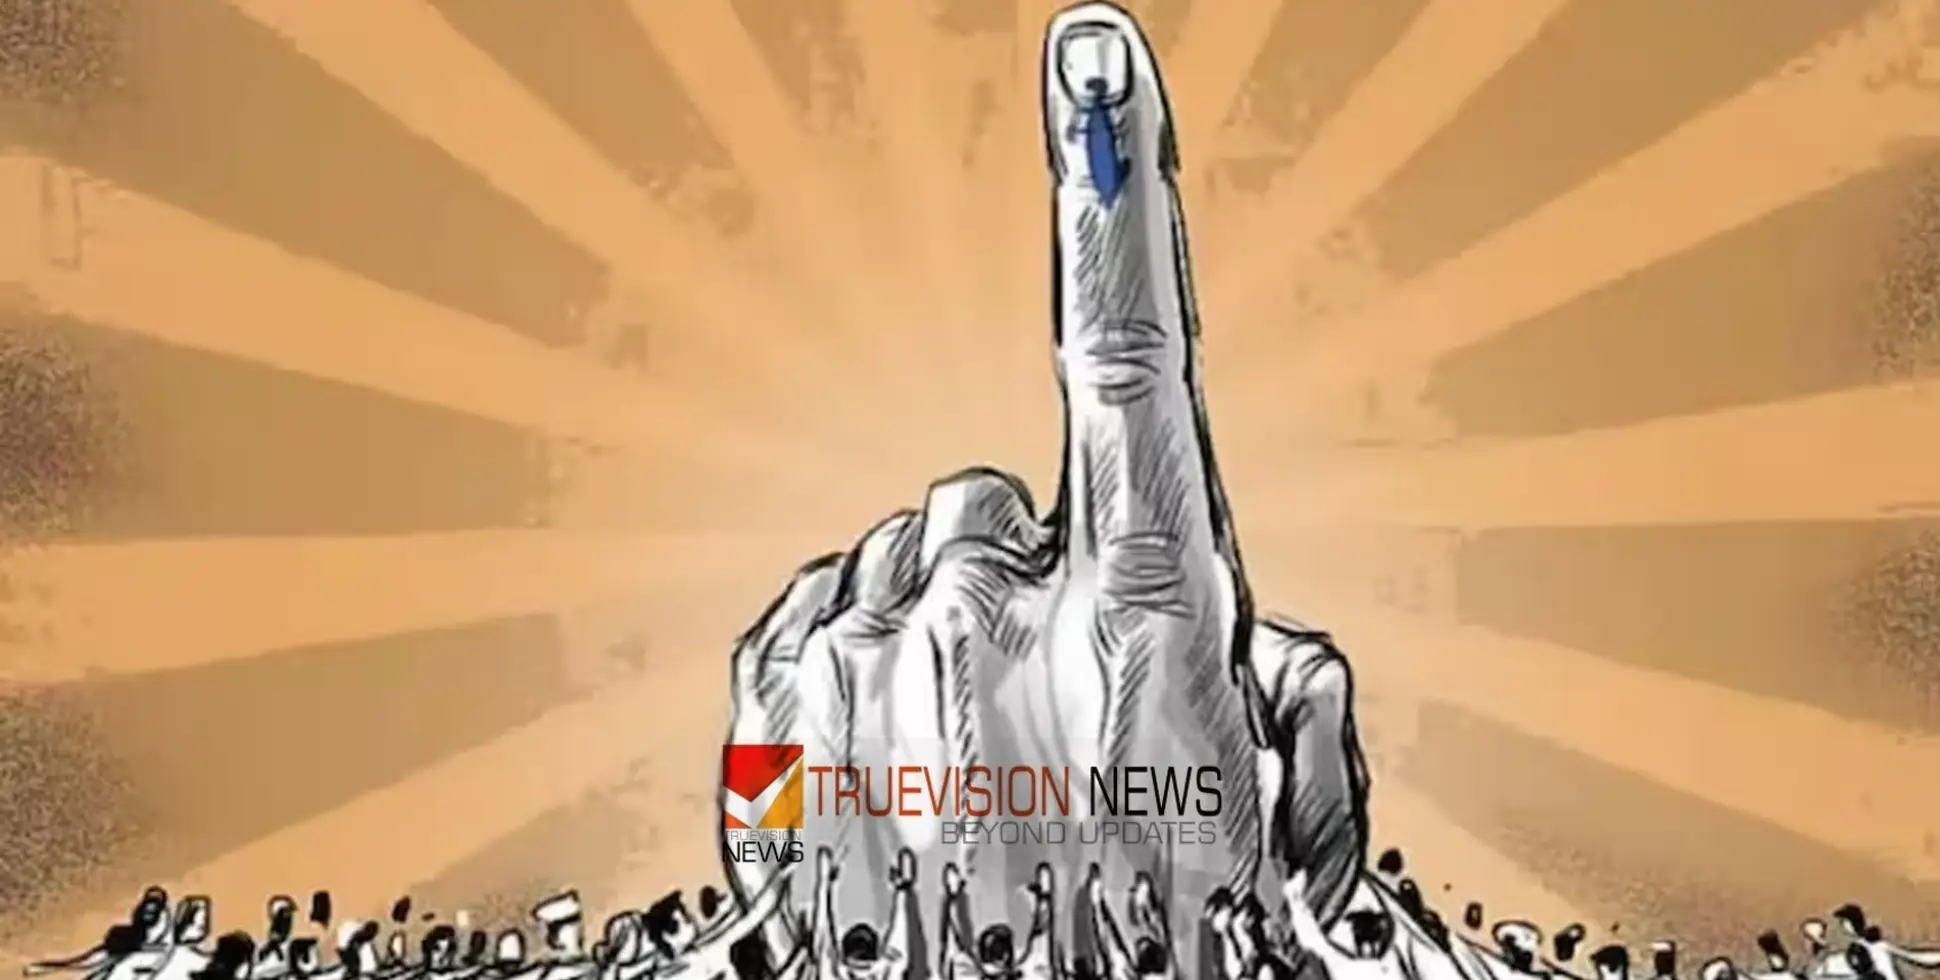 LokSabhaElection2024 | വോ​​​ട്ട​​​ർ​​​മാ​​​രി​​​ൽ പ്ര​​​തീ​​​ക്ഷ​​​യ​​​ർ​​​പ്പി​​​ക്കു​​​ന്ന ജ​​​നാ​​​ധി​​​പ​​​ത്യ തെരഞ്ഞെടുപ്പ് 